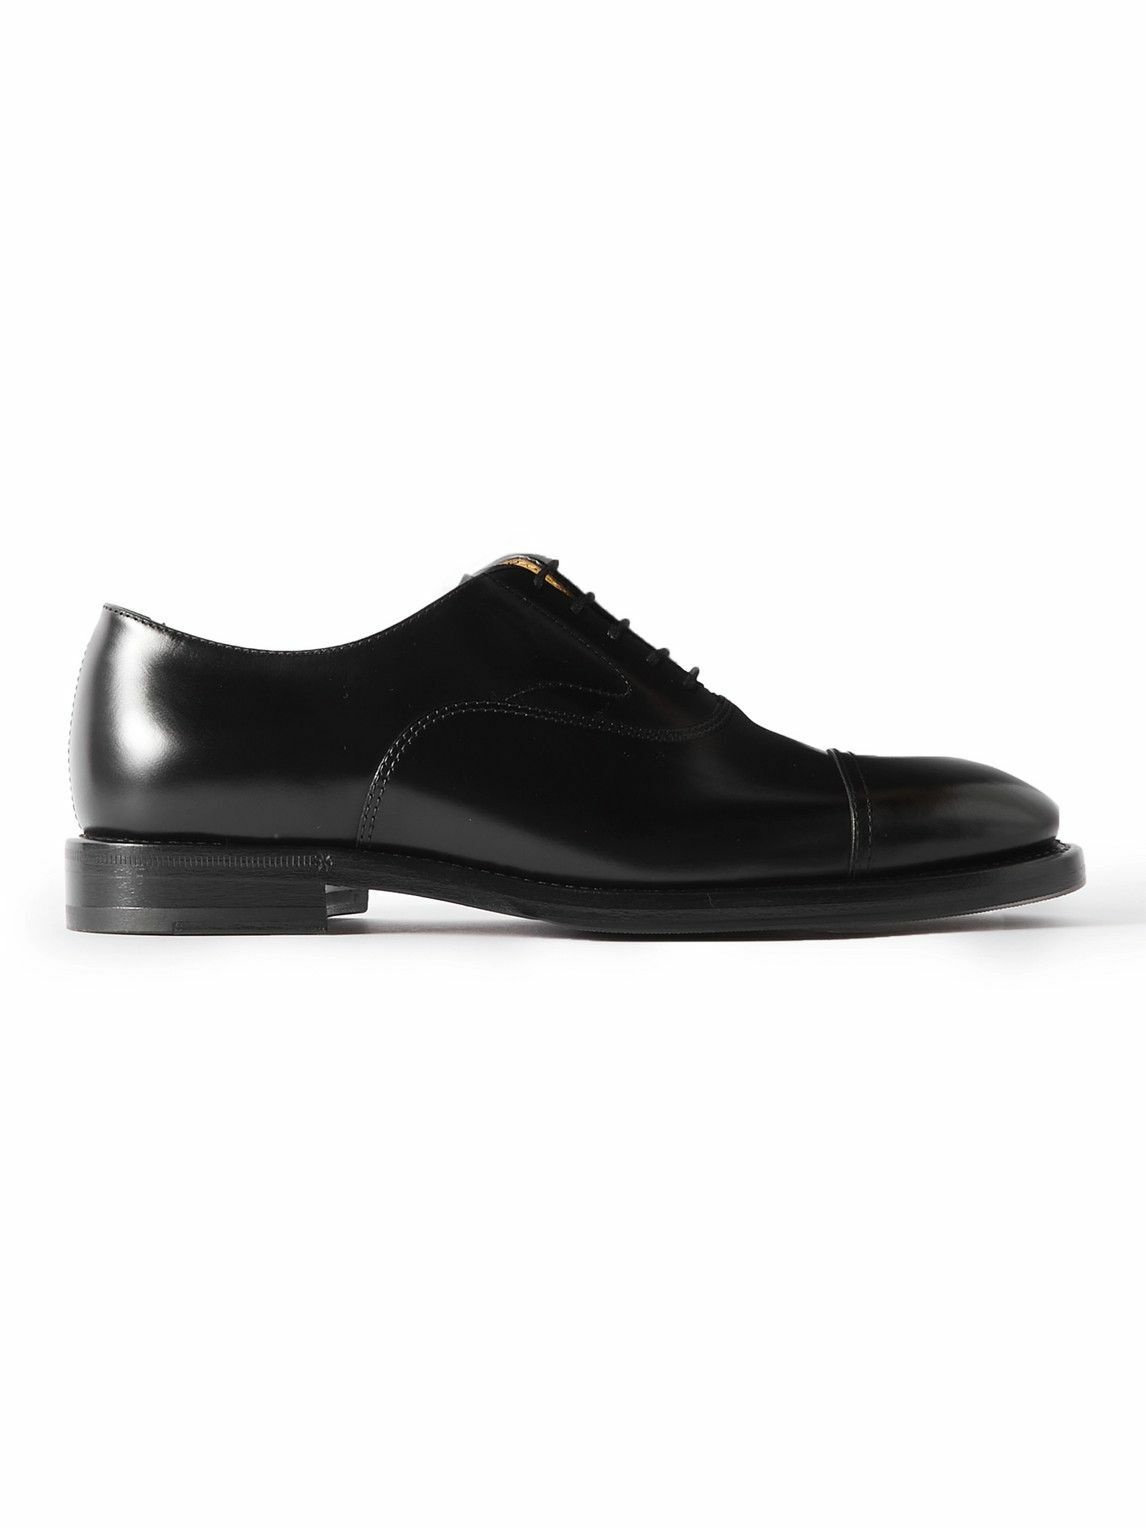 Brunello Cucinelli - Leather Oxford Shoes - Black Brunello Cucinelli